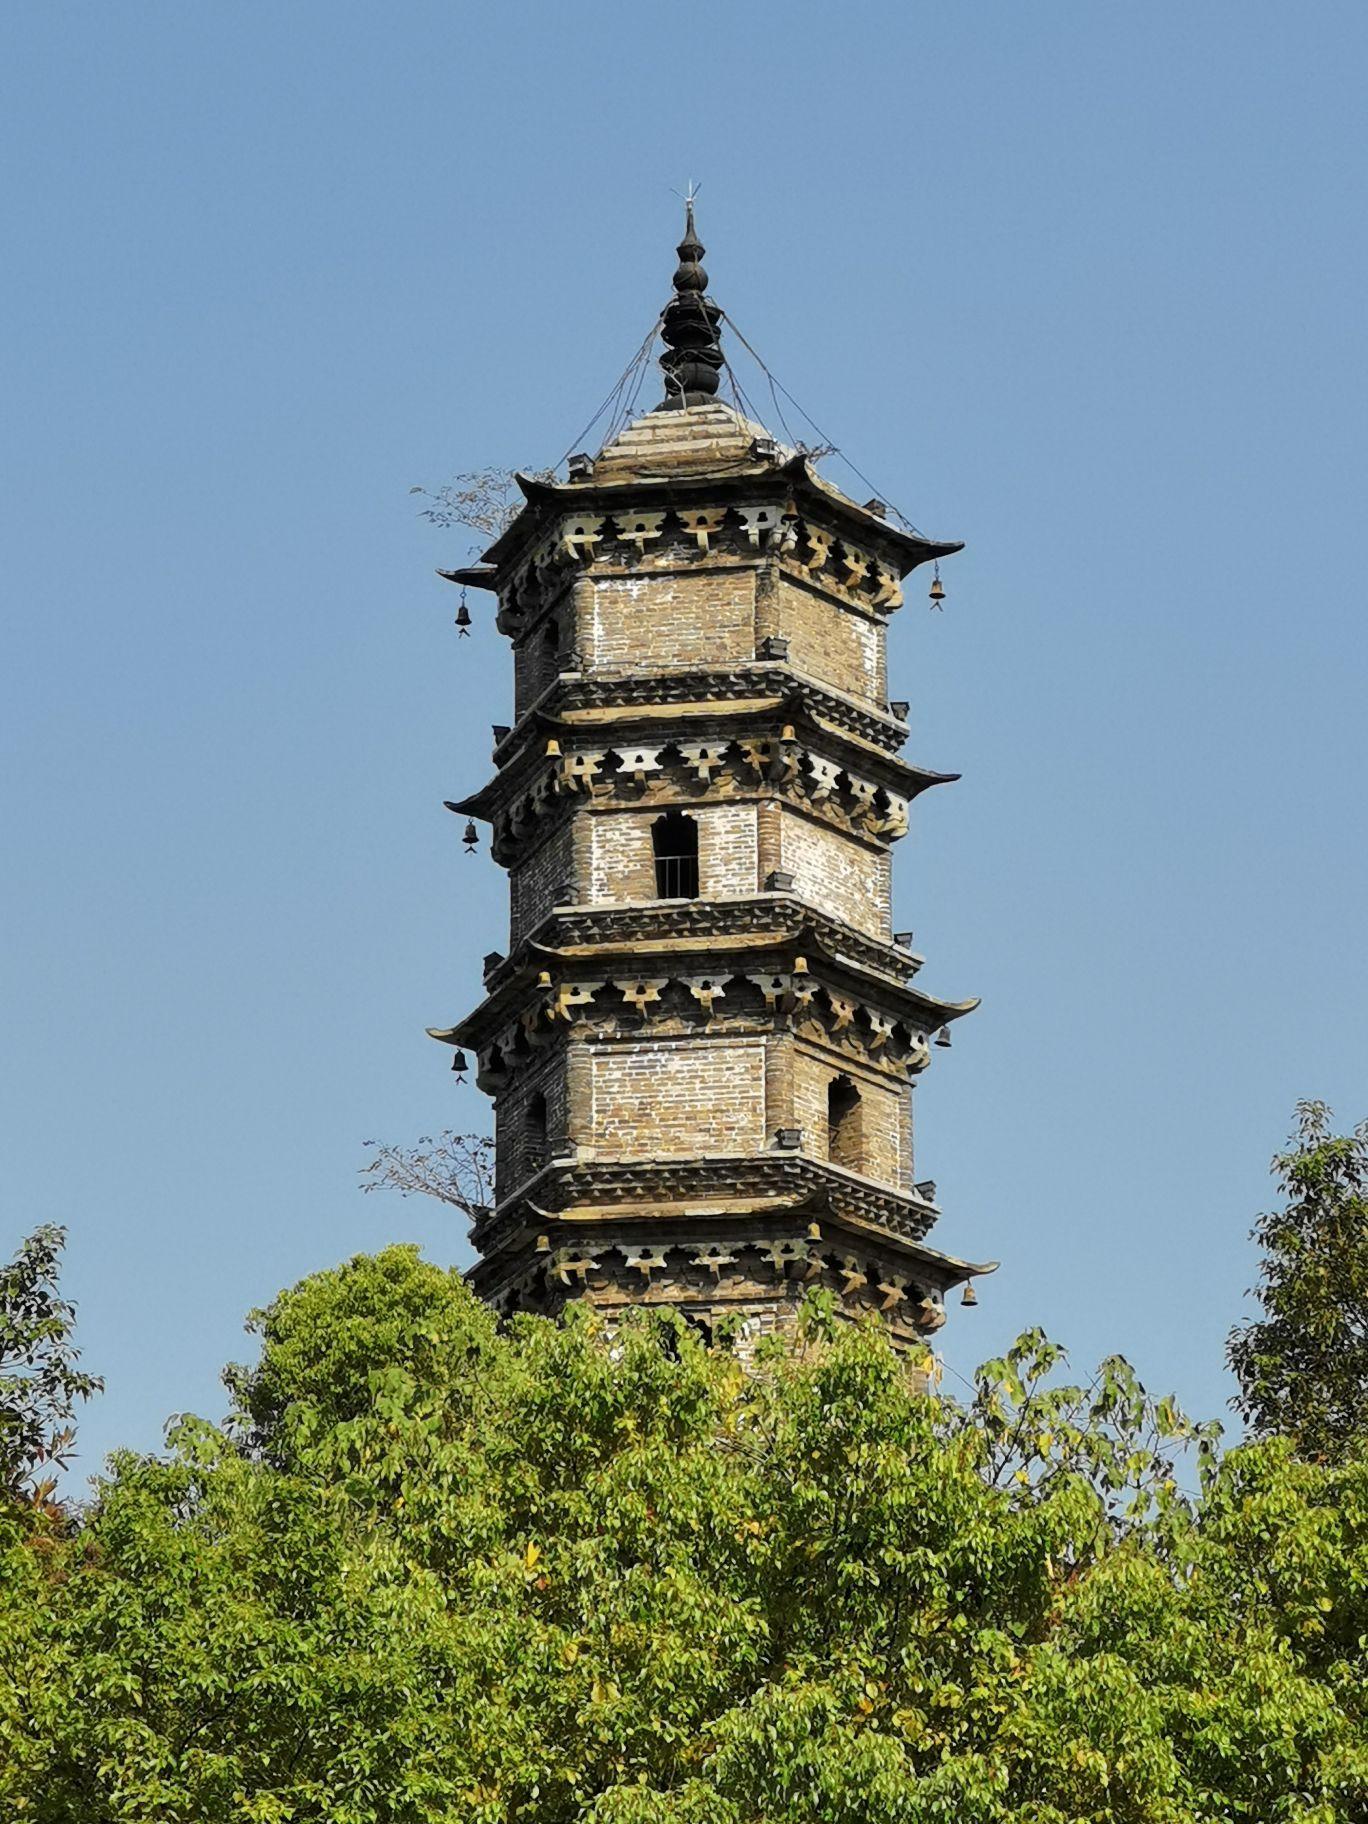 锁江楼始建于明朝万历十三年（公元1558年）。由九江郡守吴秀创建，历时十八年才竣工。楼当时叫江天锁钥